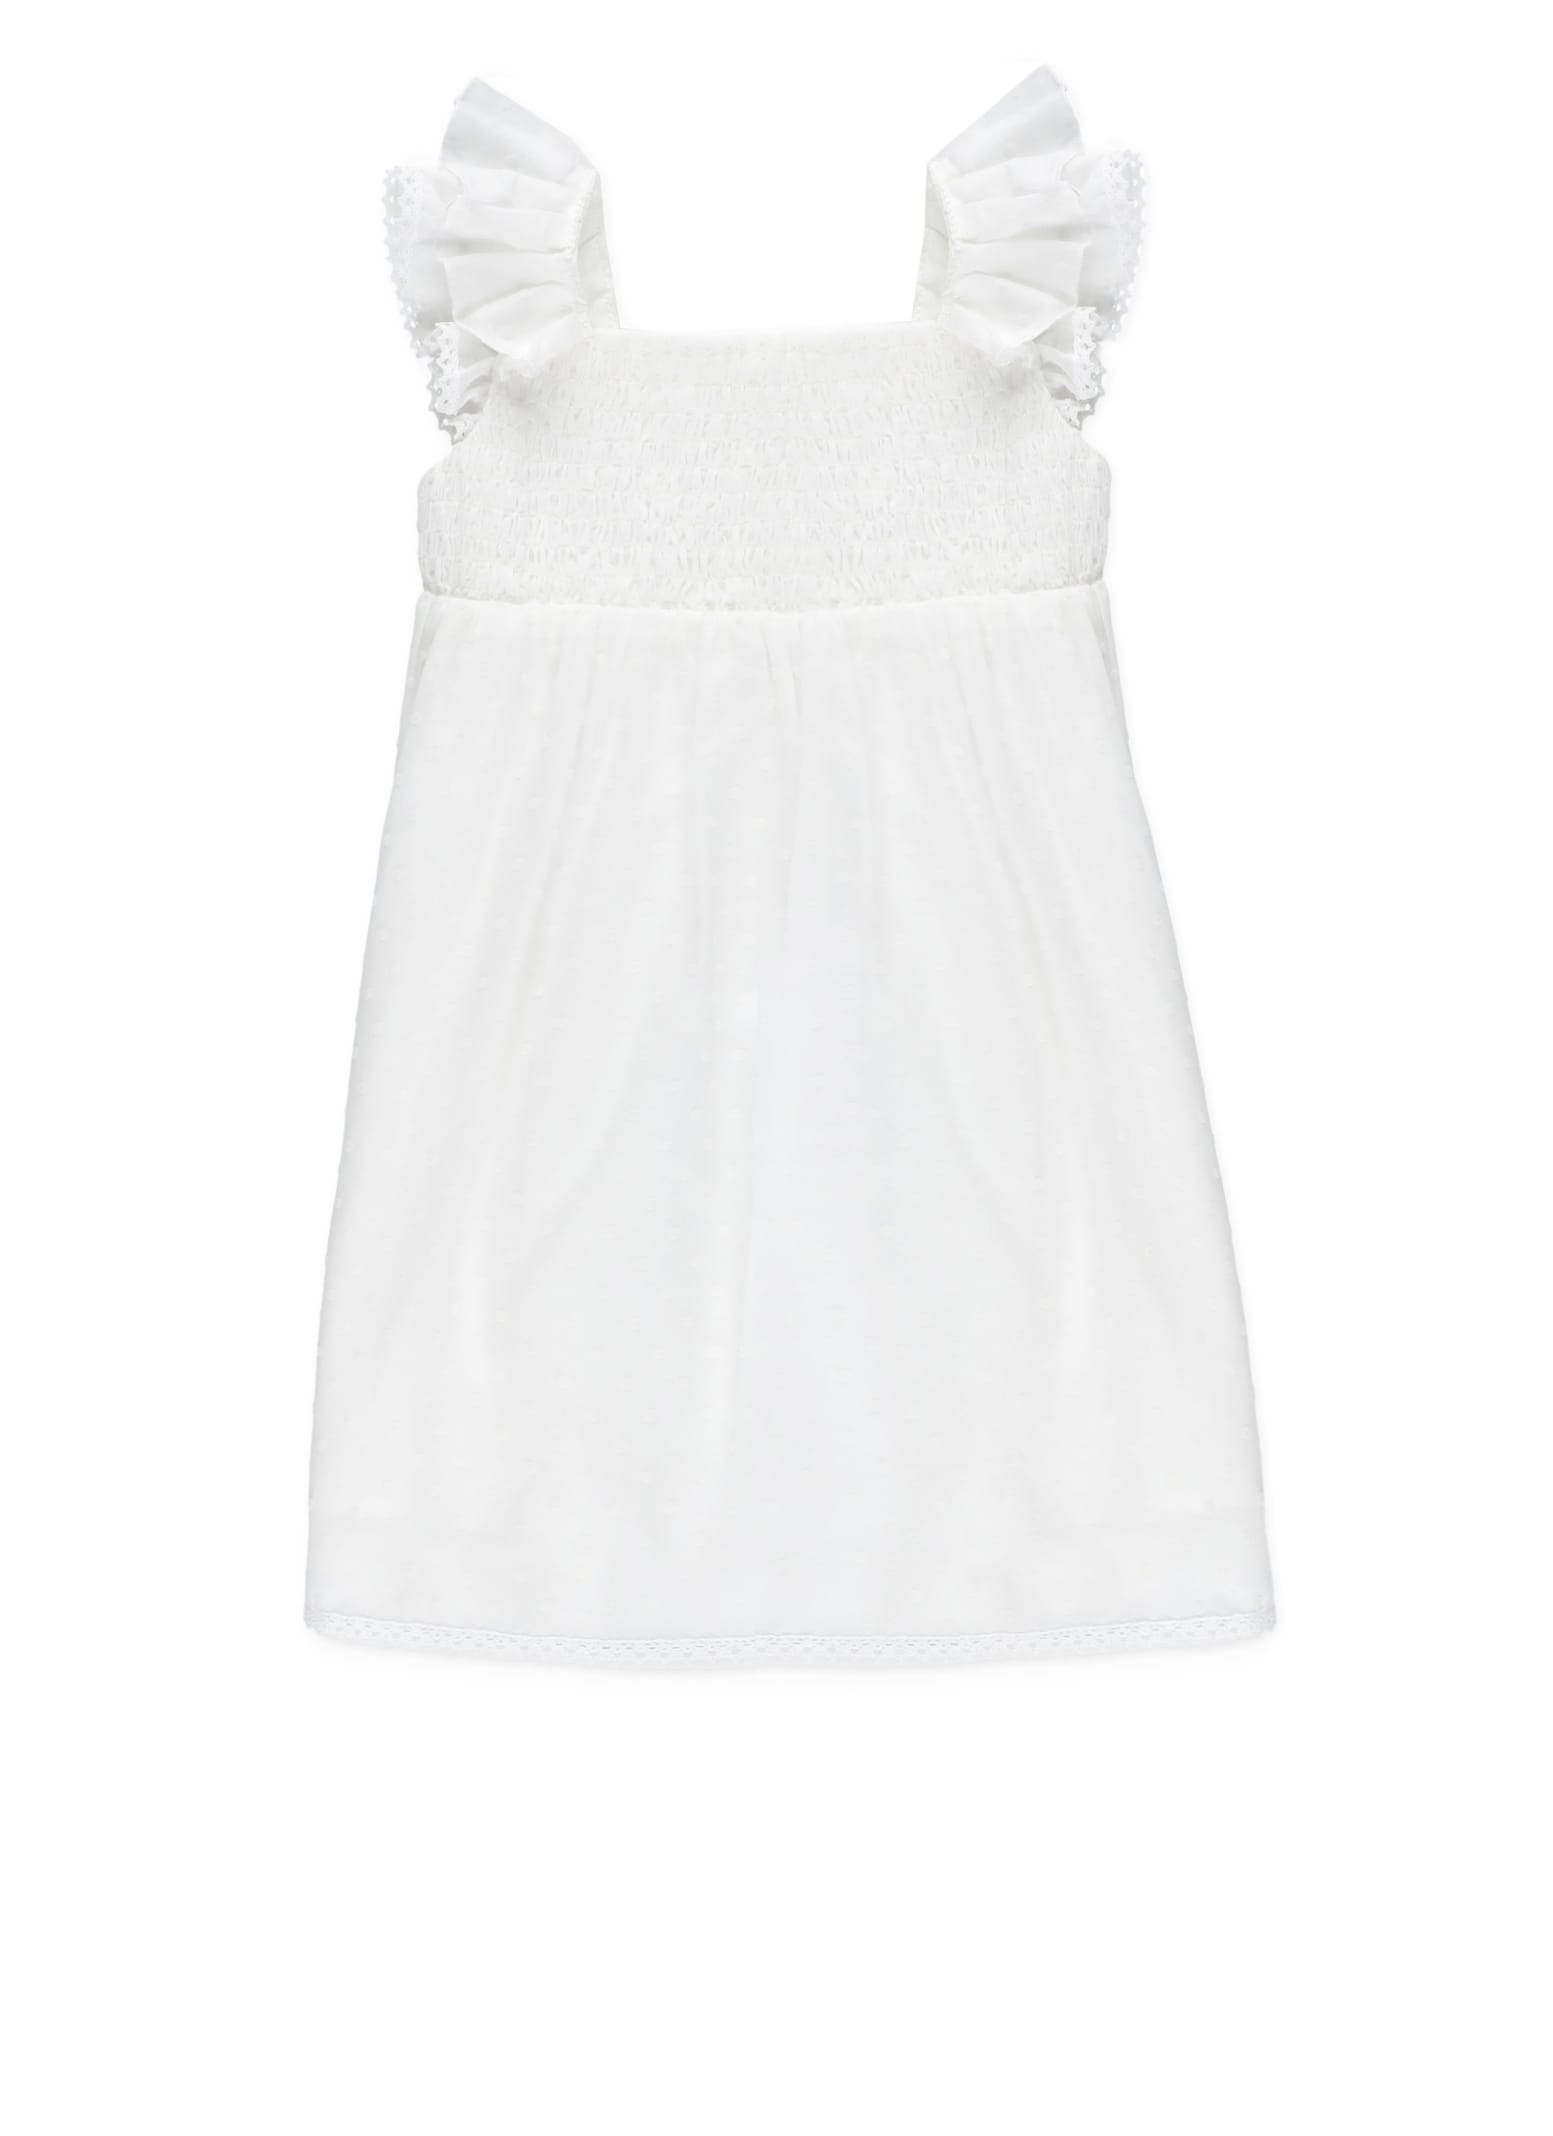 Stella Mccartney Babies' Woven Dress In White